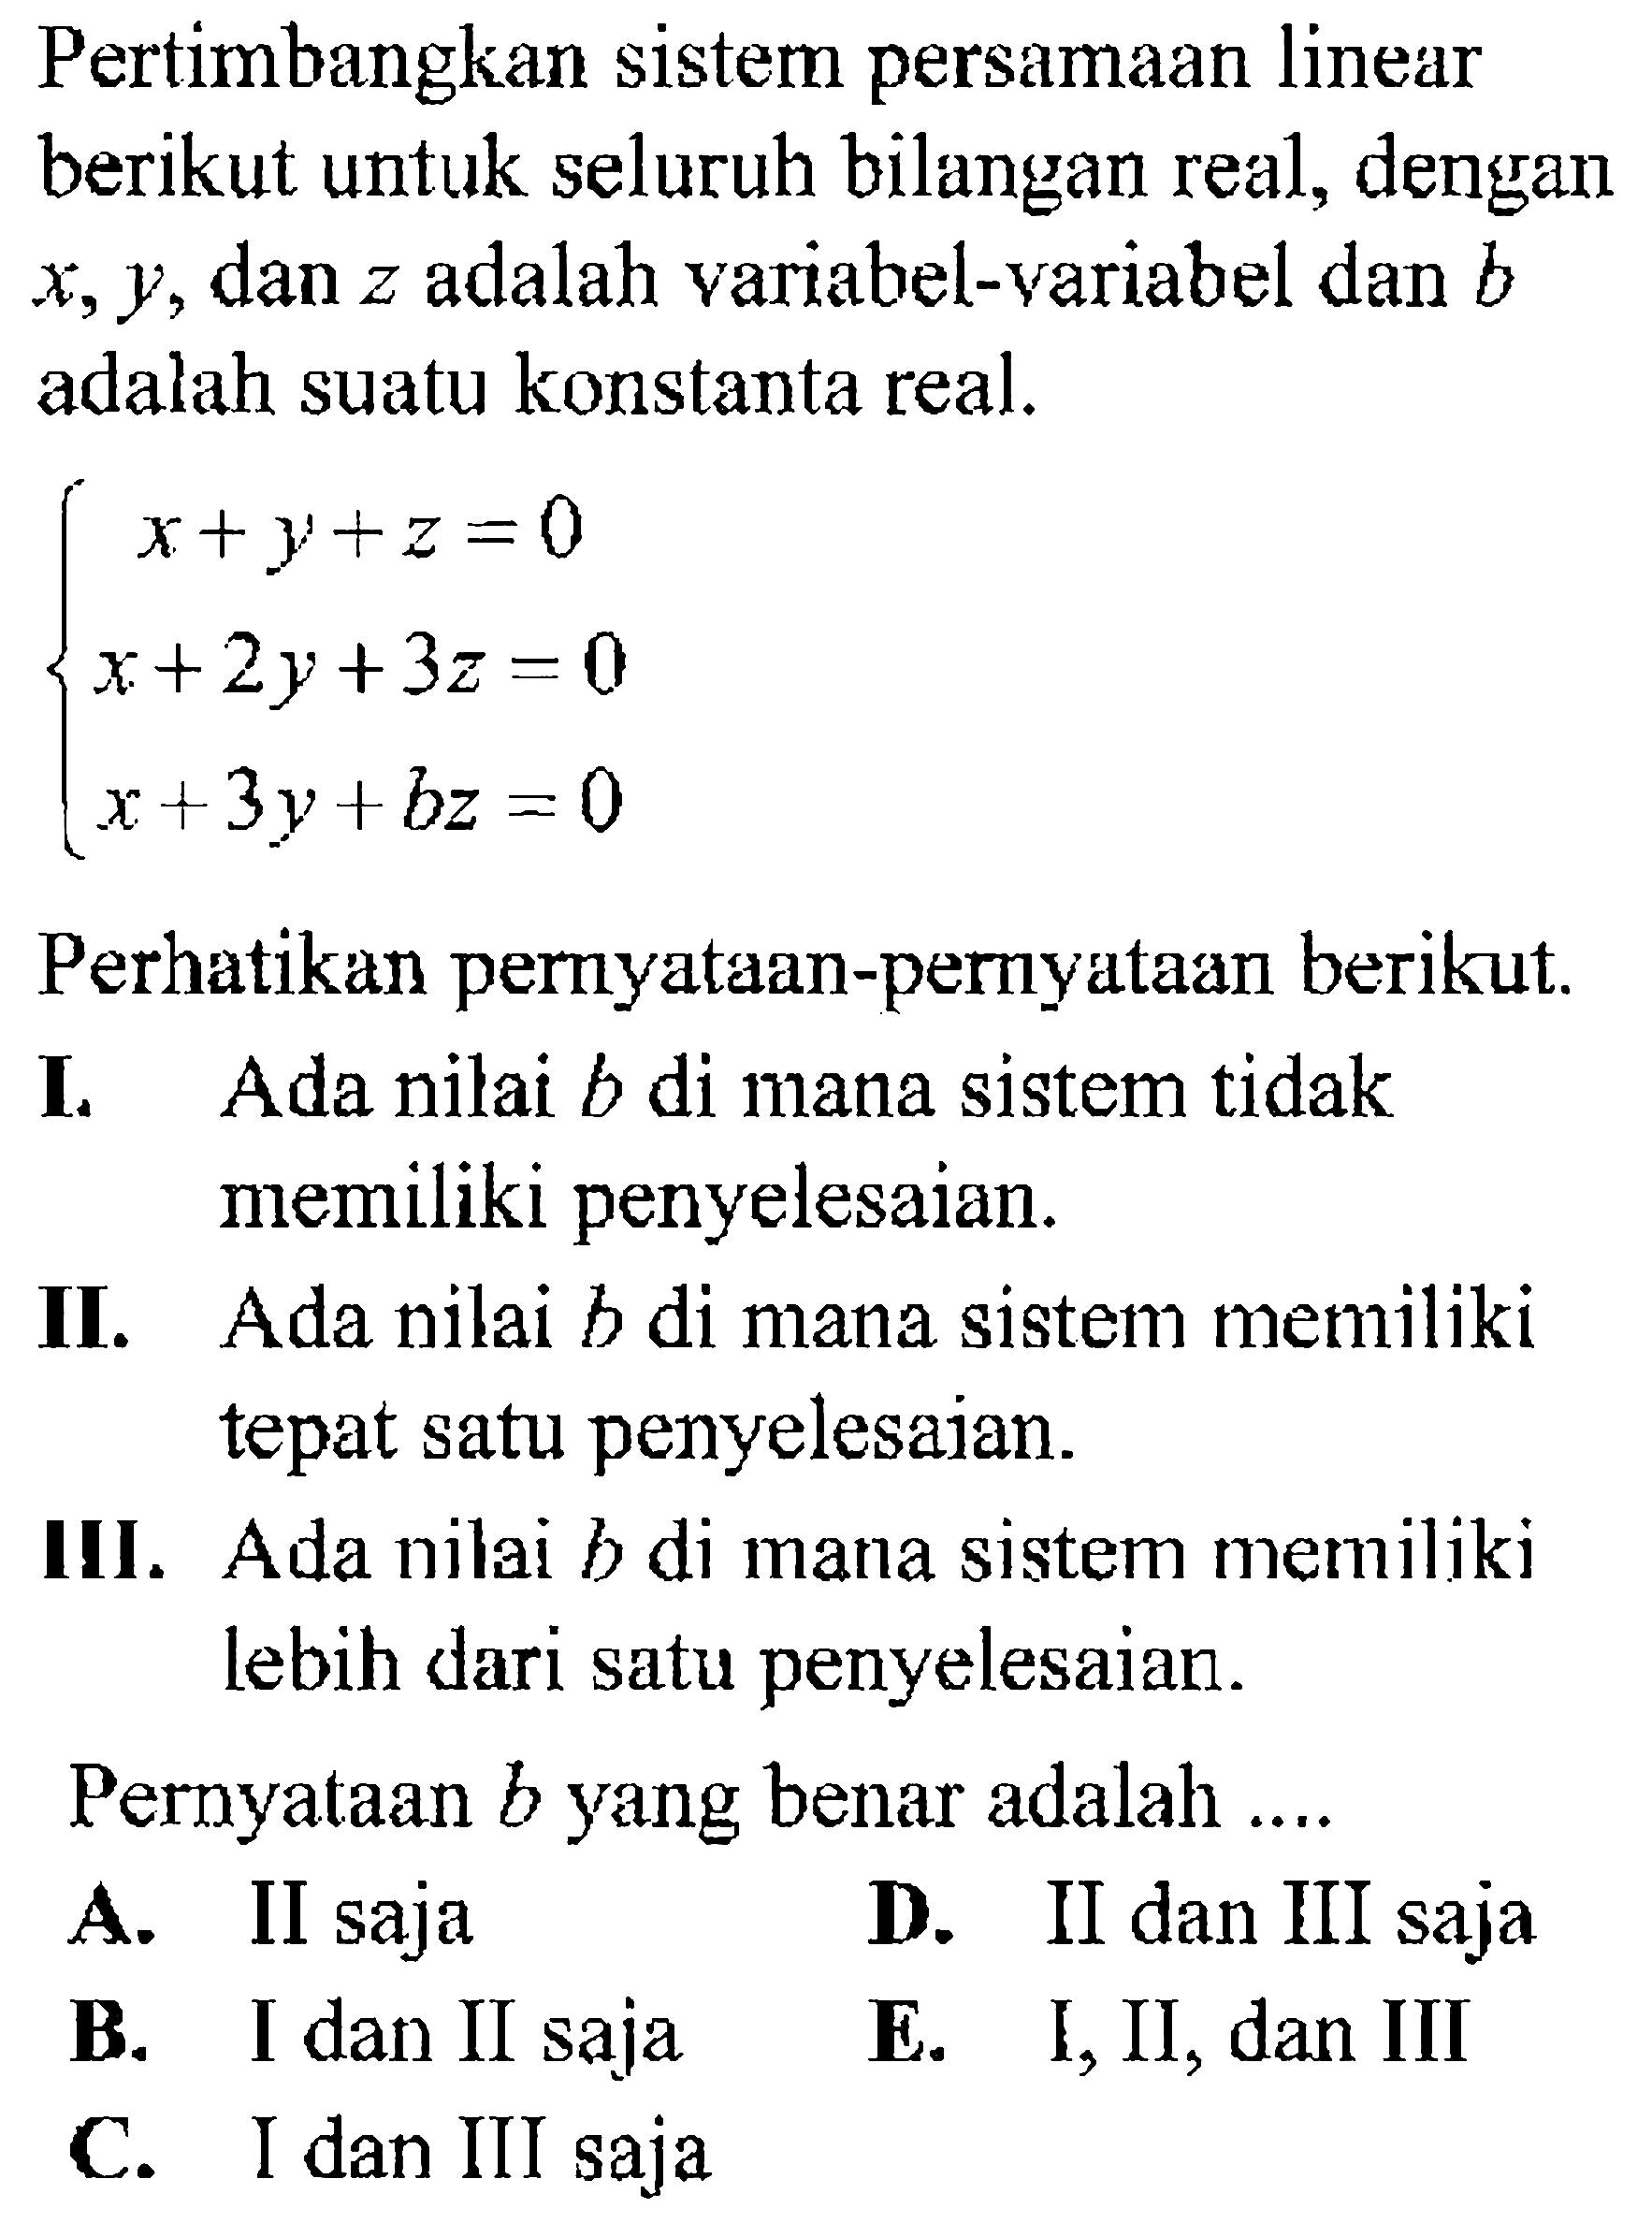 Pertimbangkan sistem persamaan linear berikut untuk seluruh bilangan real, dengan x, y, dan z adalah variabel-variabel dan b adalah suatu konstanta real. x+y+z=0 x+2y+3z=0 x+3y+bz=0 Perhatikan pernyataan-peryataan berikut. I. Ada nilai b di mana sistem tidak memiliki penyelesaian. II. Ada nilai b di mana sistem memiliki tepat satu penyelesaian. III. Ada nilai b di mana sistem memiliki lebih dari satu penyelesaian. Pernyataan b yang benar adalah....